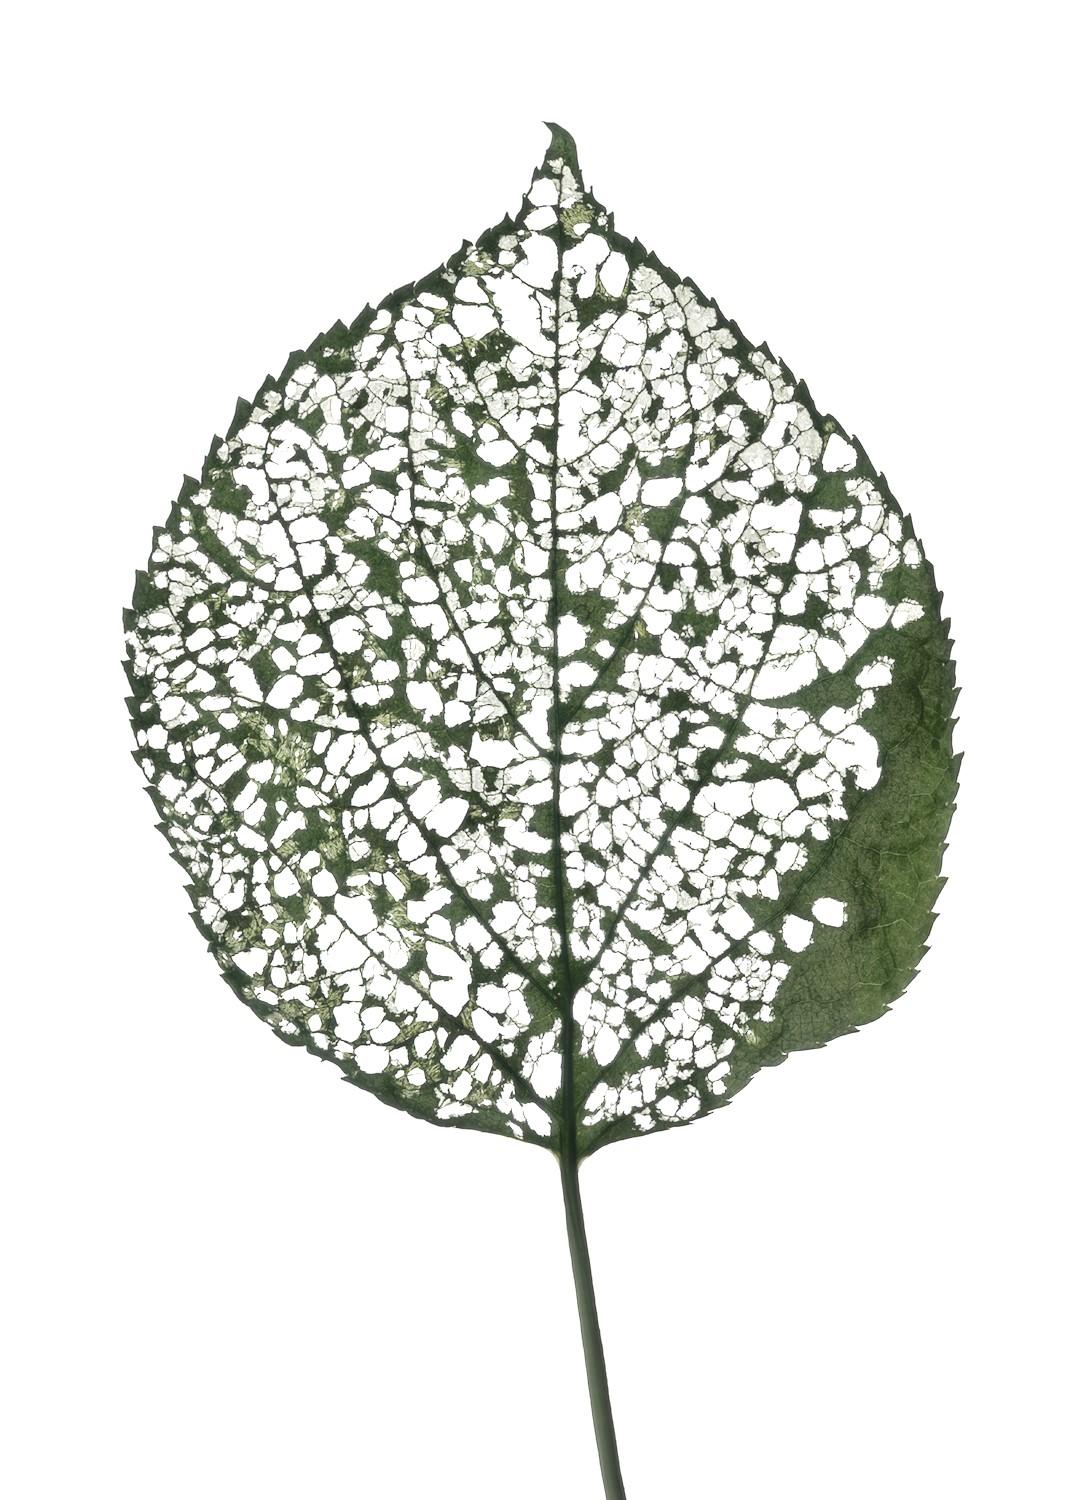 Still-Life Photograph Chad Kleitsch - Eaten Leaf #115 : Photographie scandinave couleur d'une feuille verte : nature morte